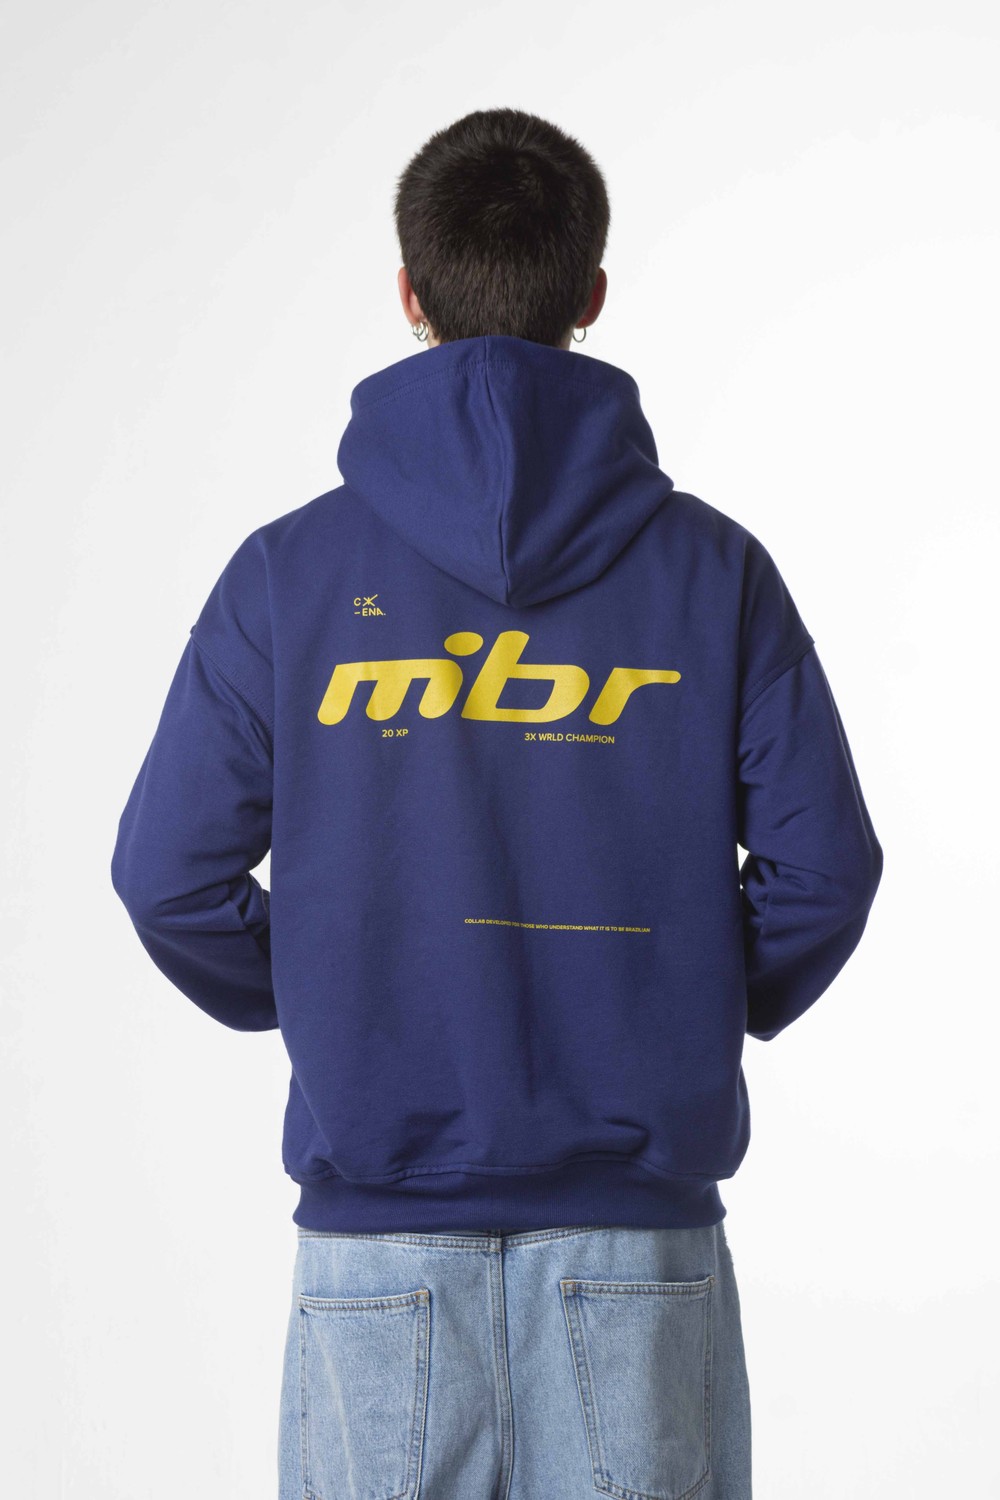 Retro Logo MIBR Zip Hoodie